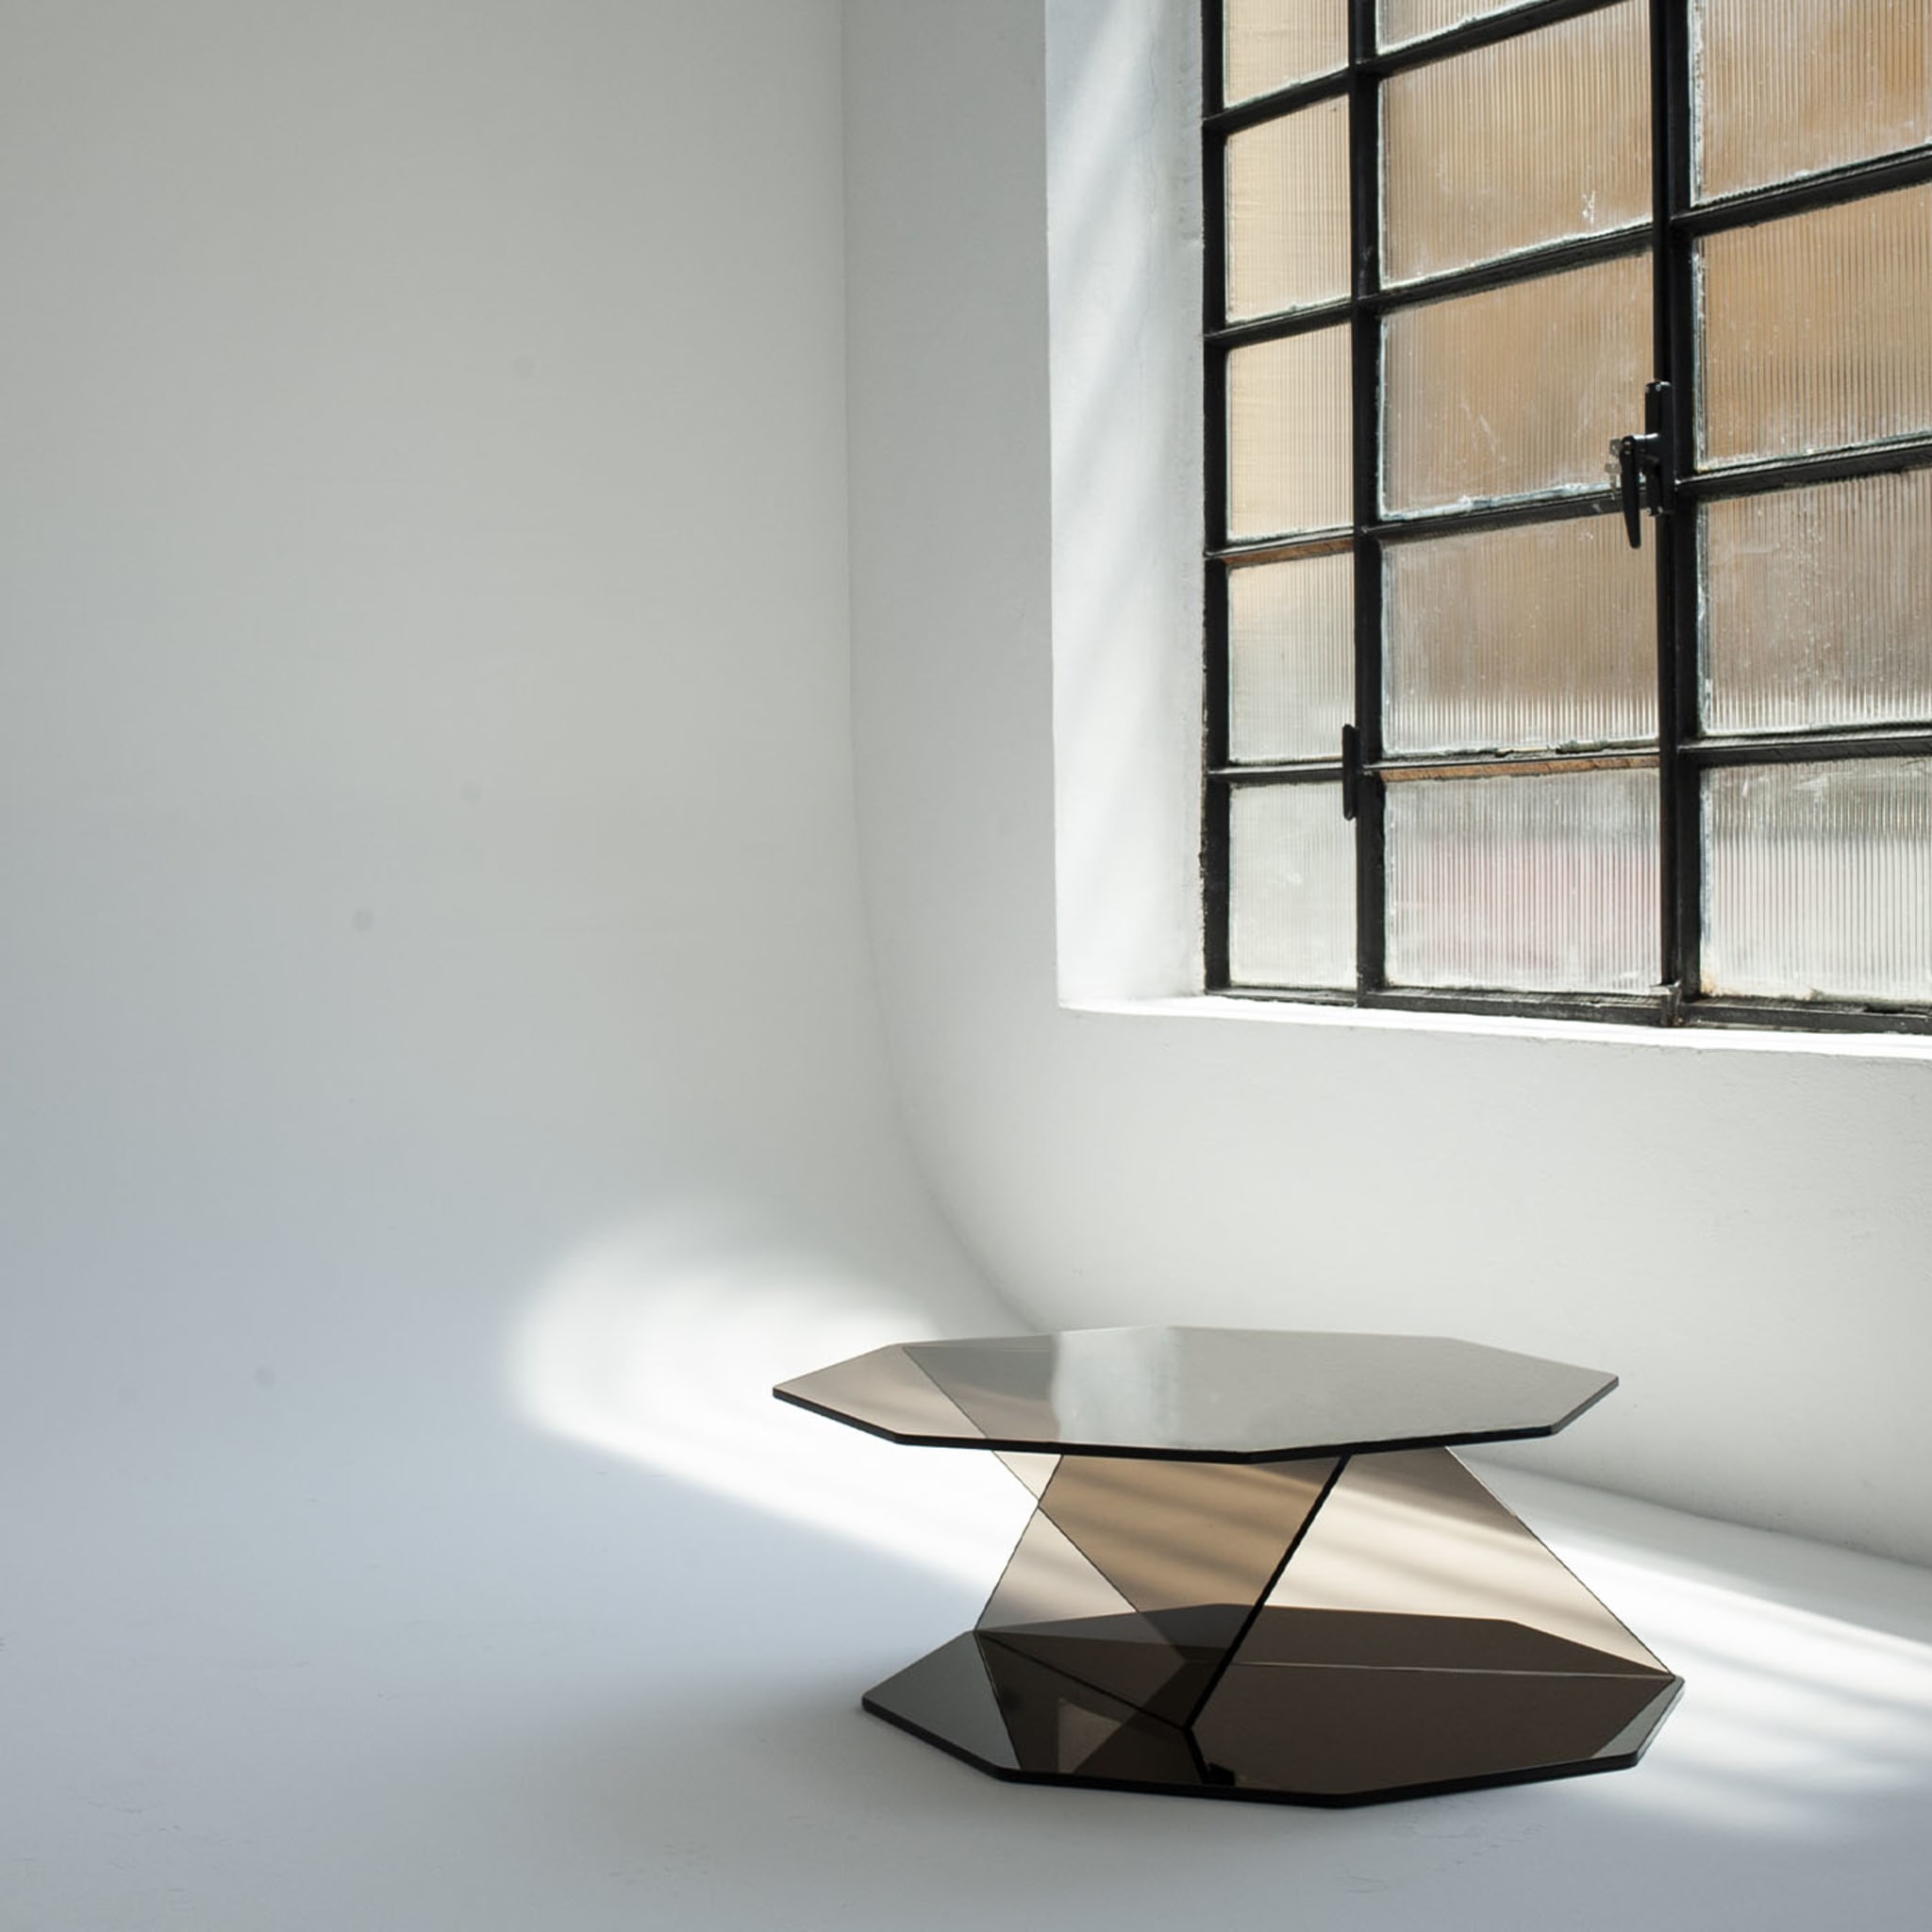 Otto Bronze Coffee Table by Andrea Petterini - Alternative view 1